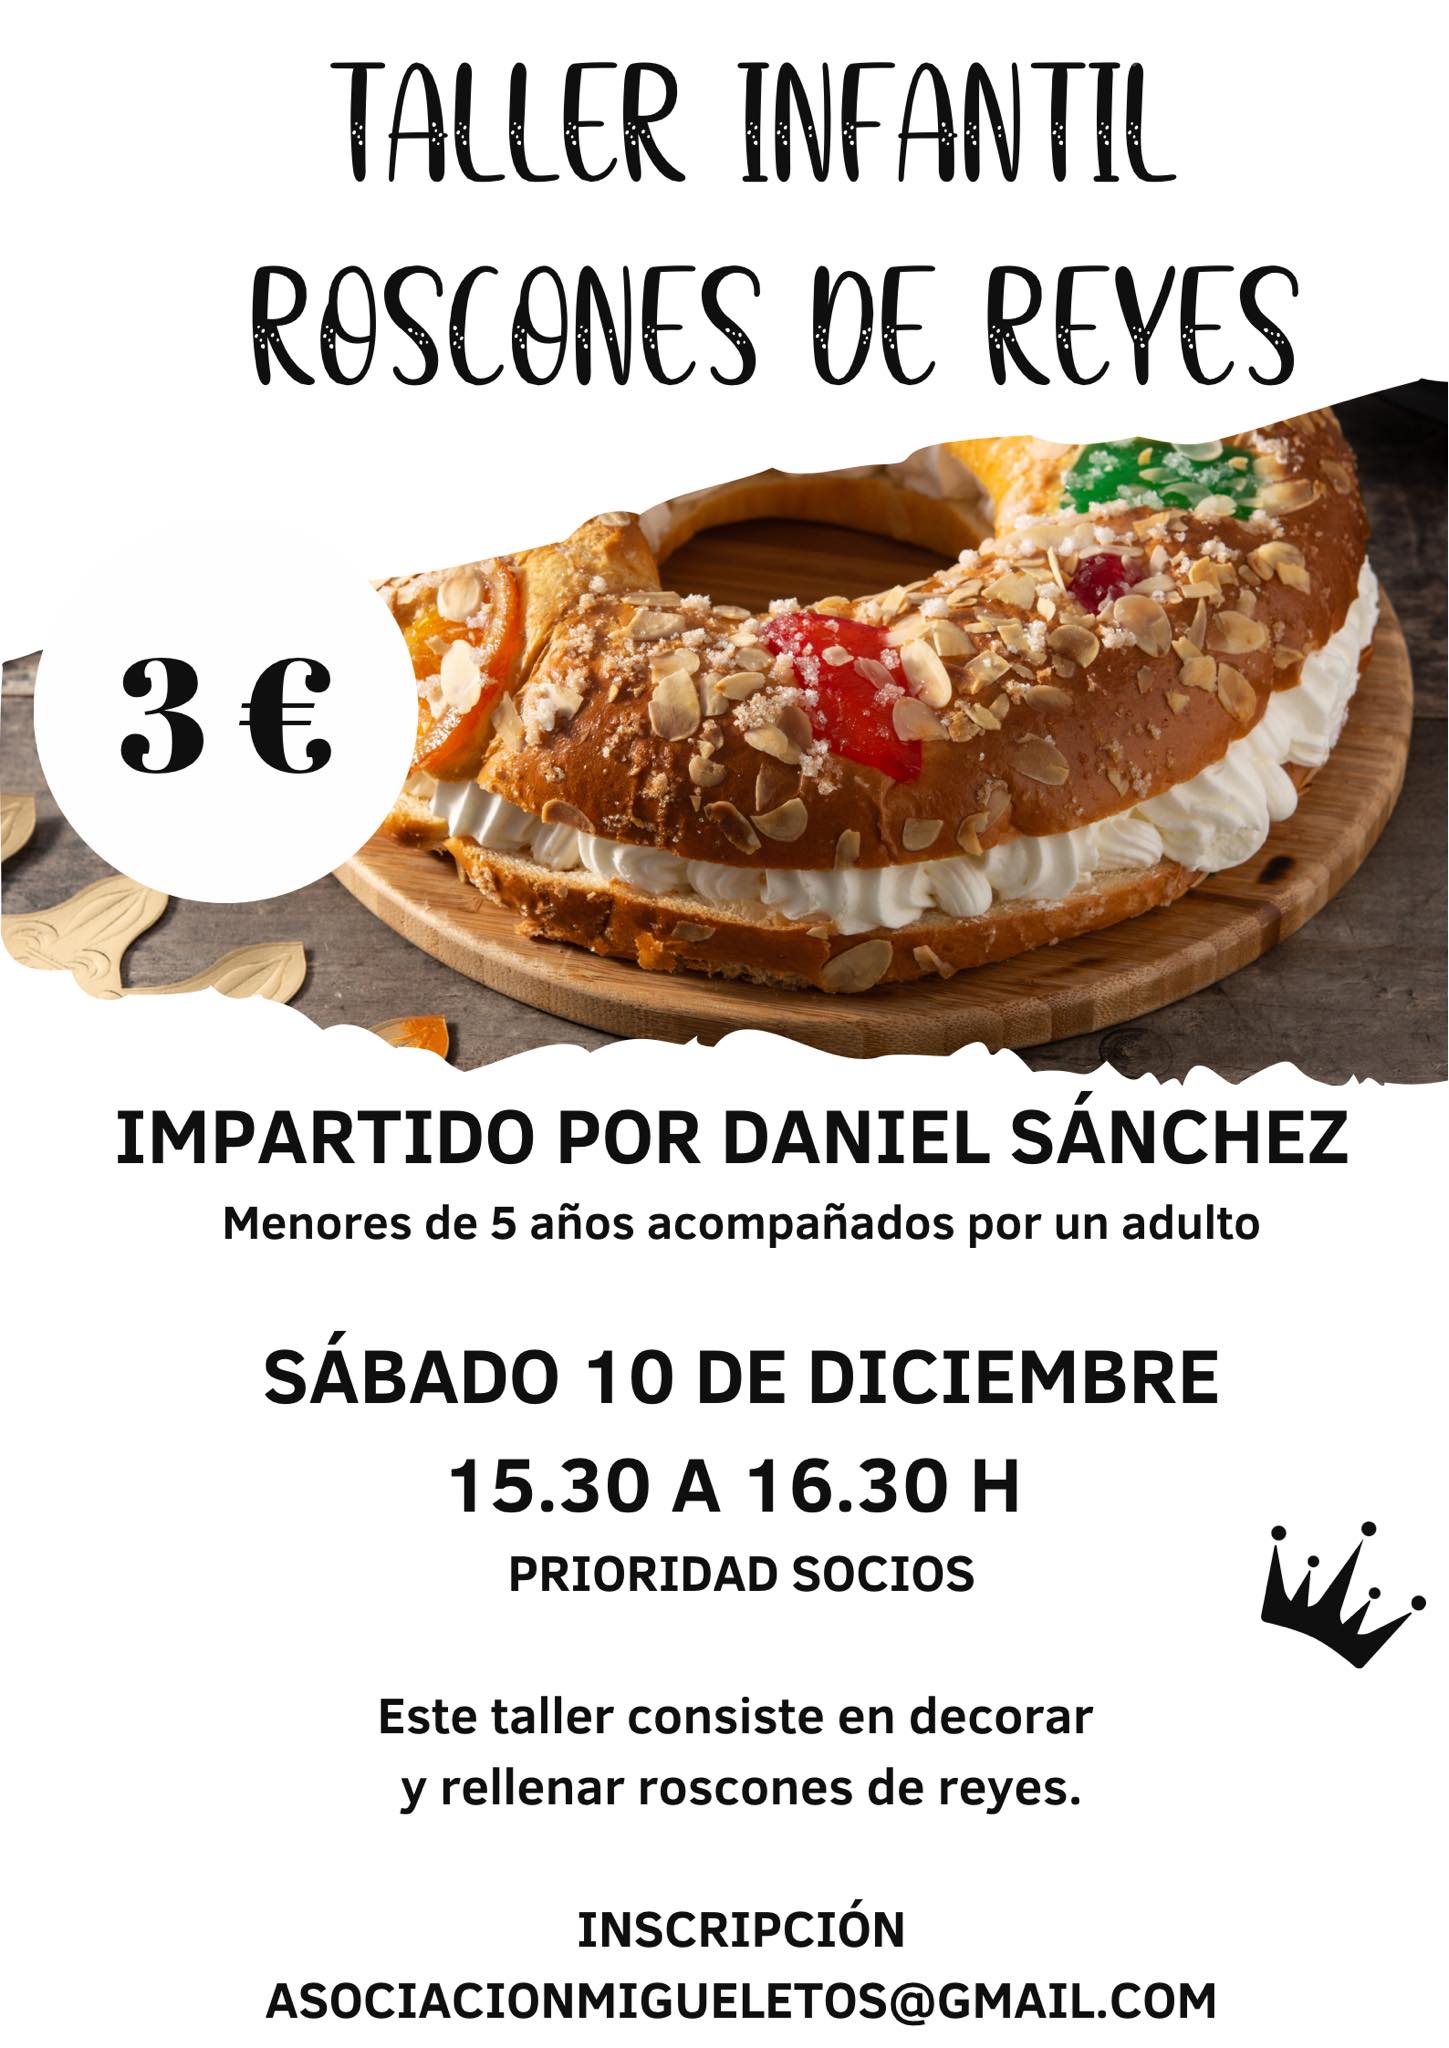 Taller Infantil Roscones de Reyes